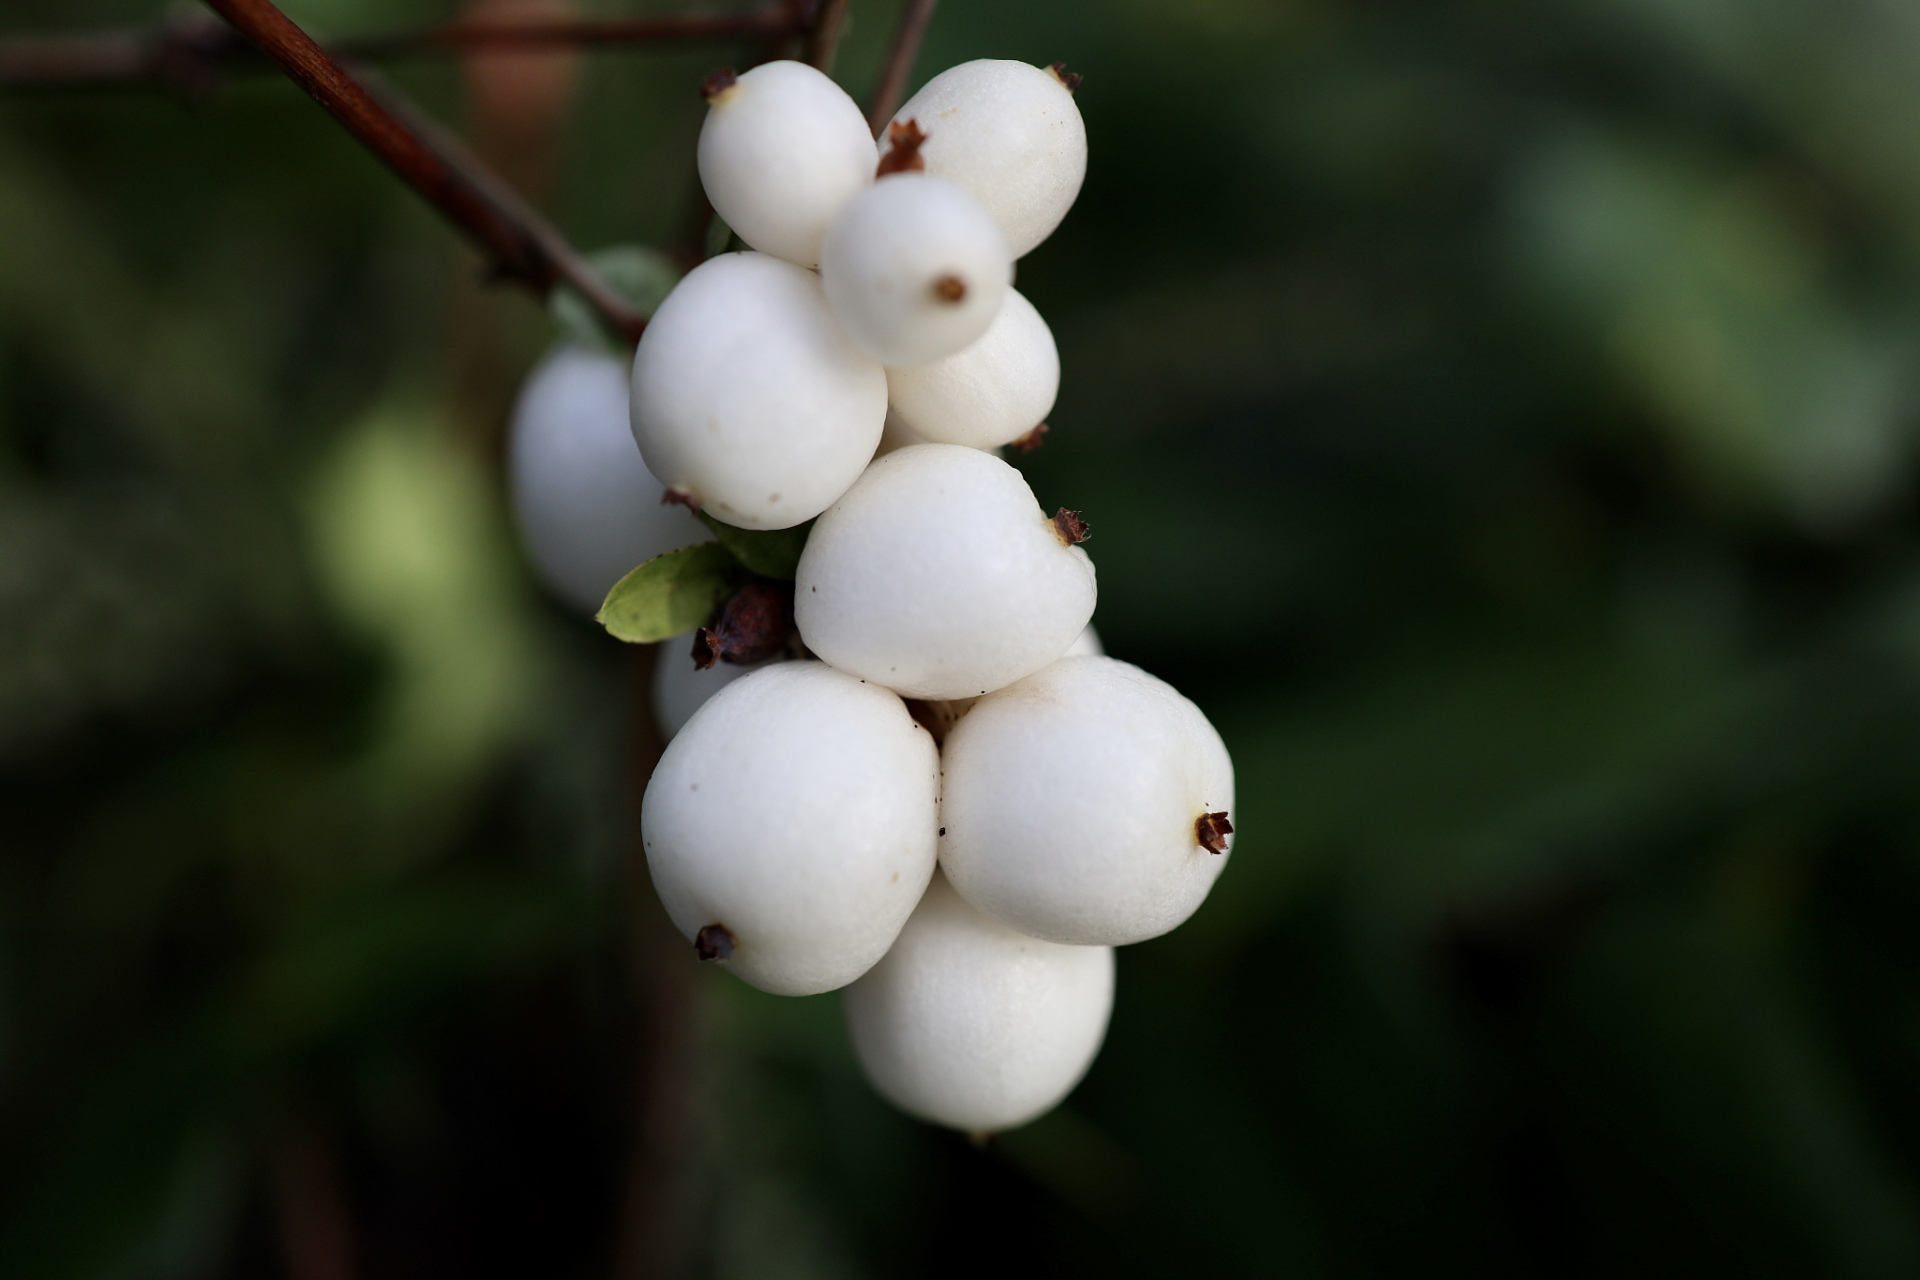 白饭果 白饭果又叫白饭木,是一种常见的美味野果,通常生长在比较潮湿